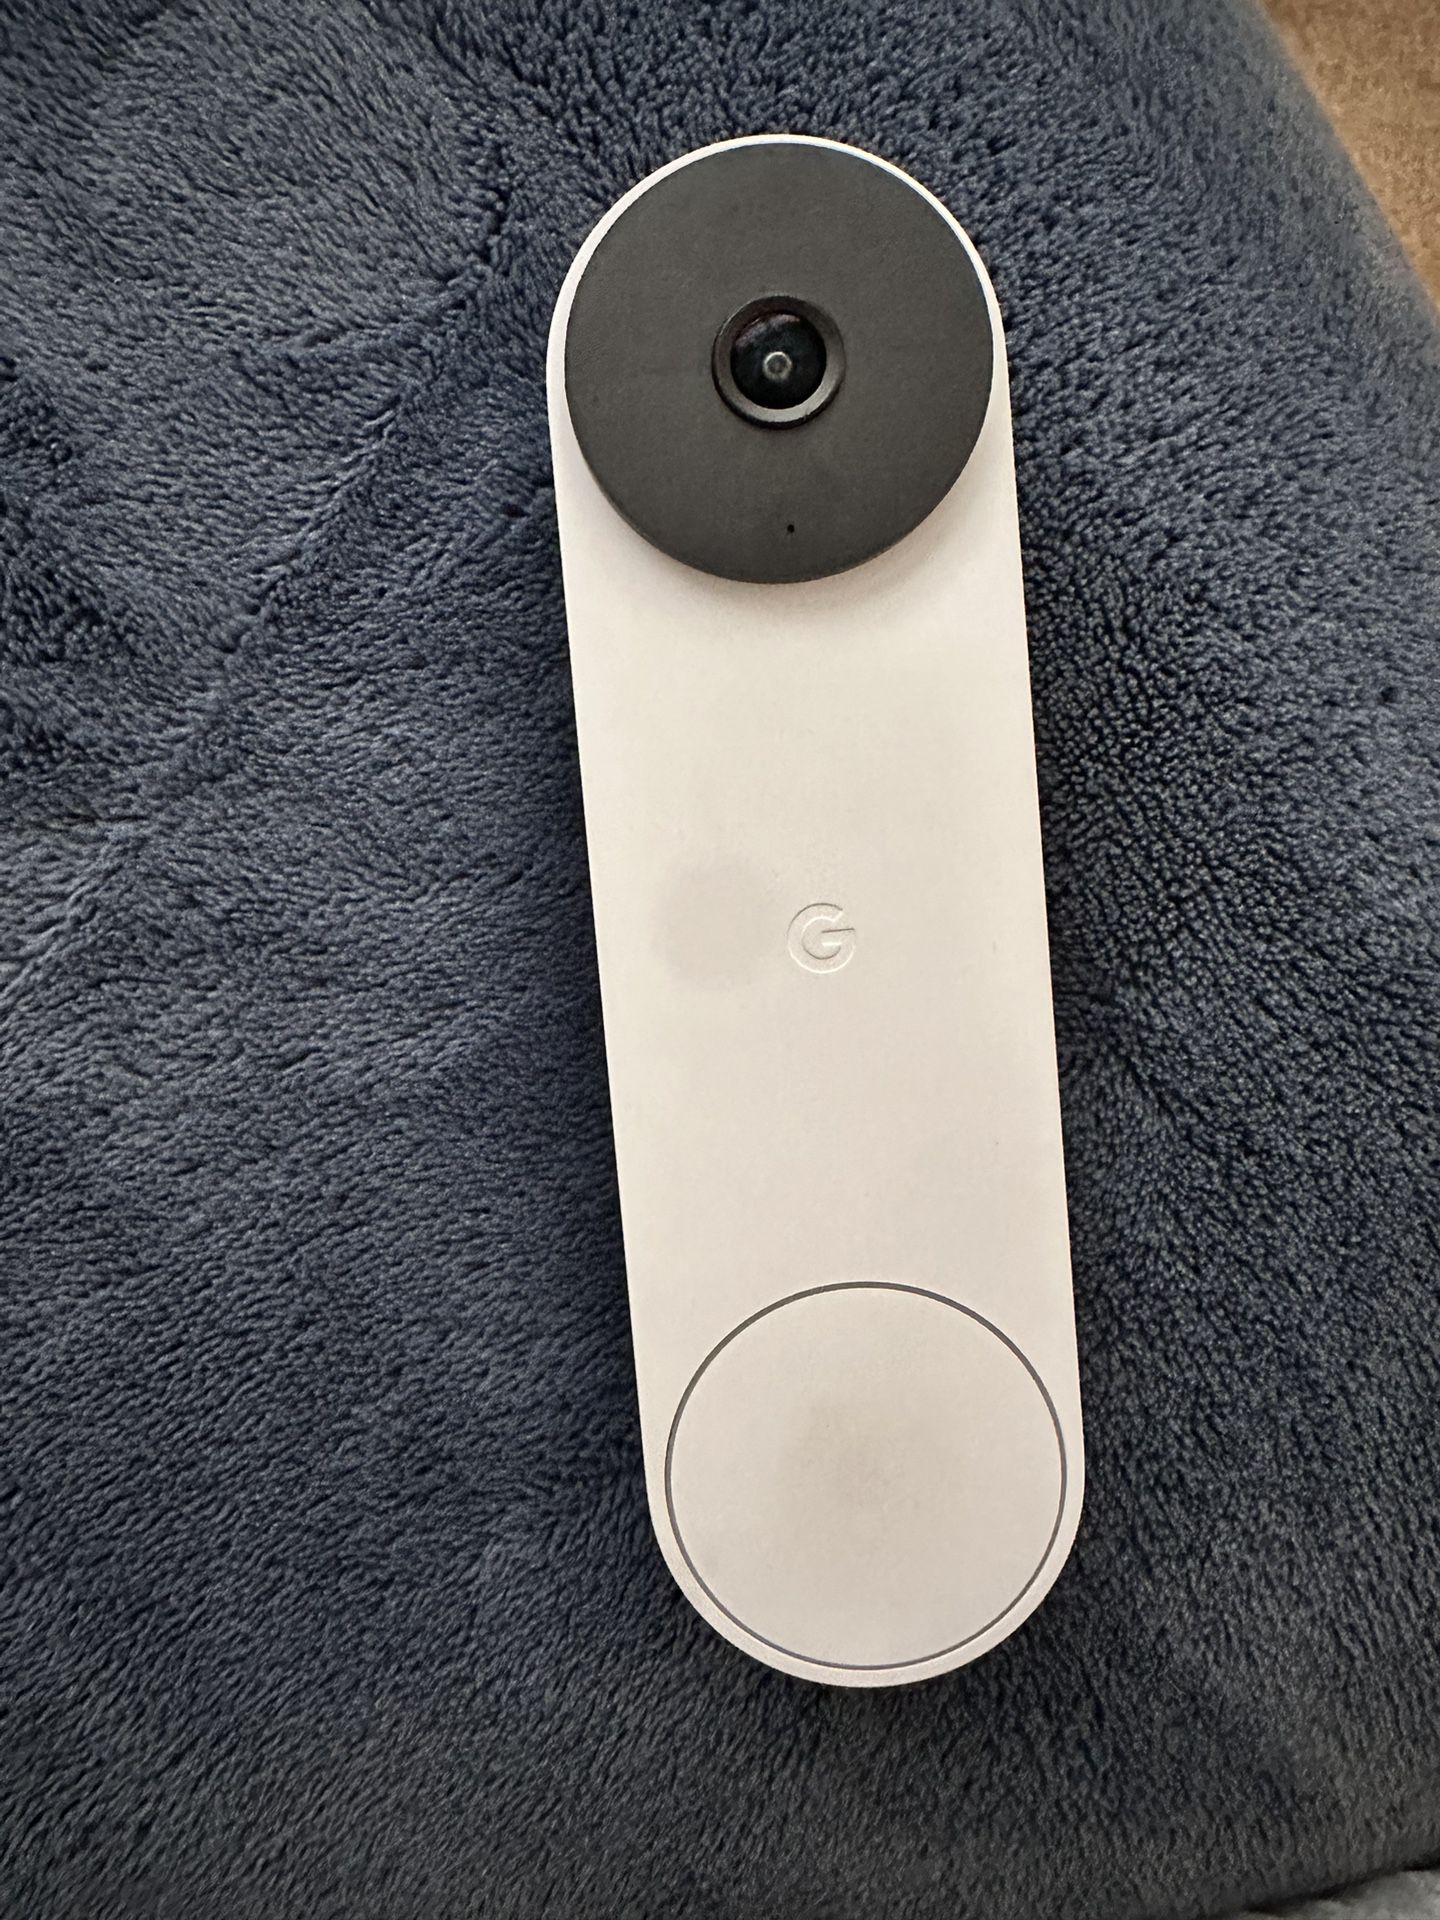 Google doorbell Camera